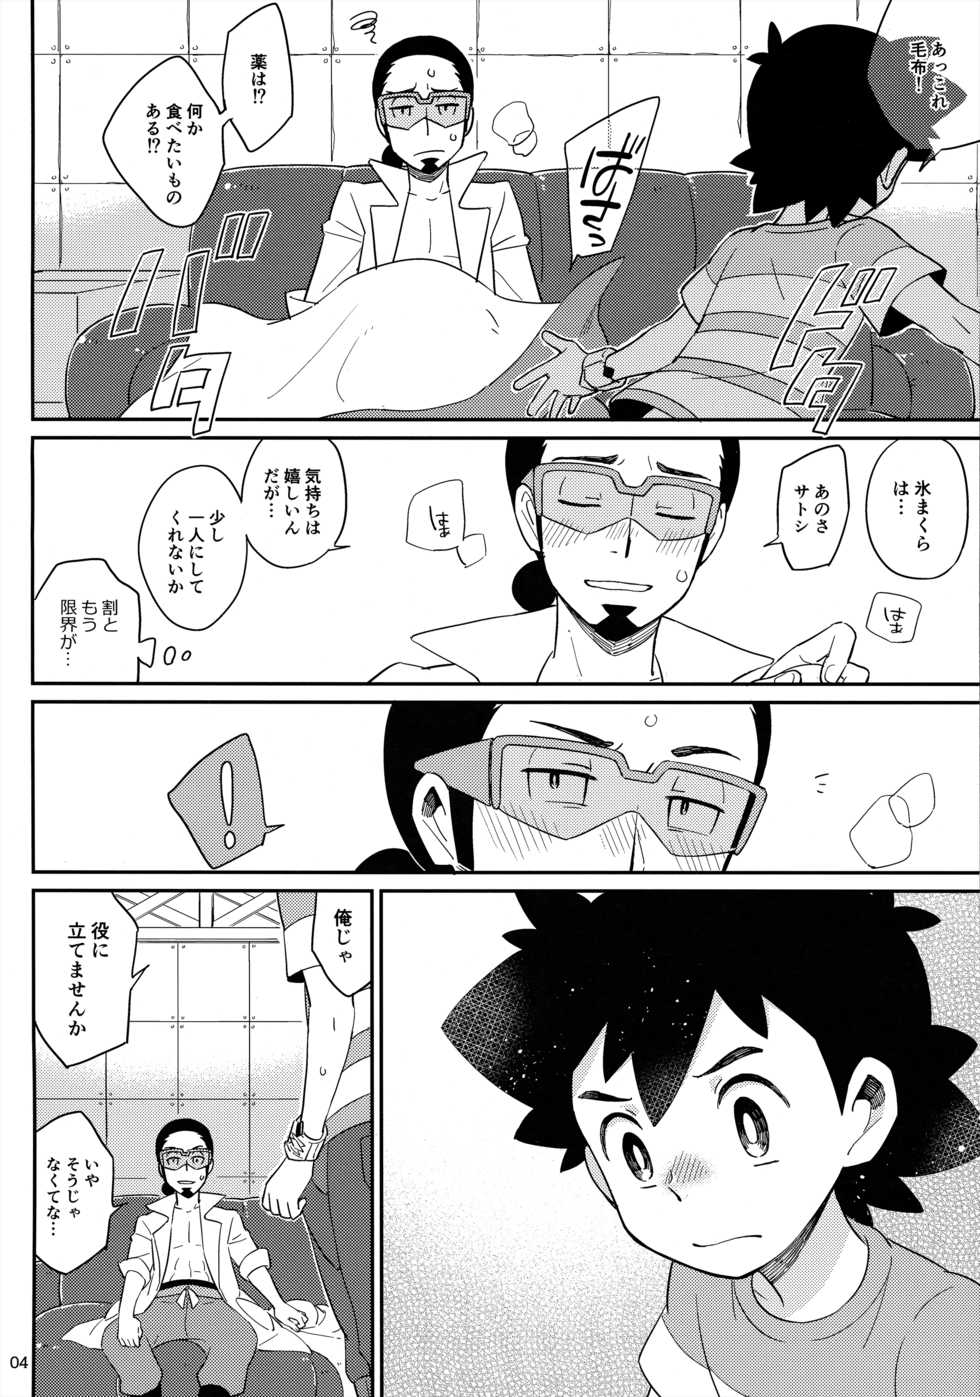 [YMC (Chihi)] Okaerinasai no Sono Ato wa (Pokémon) [2017-06-18] - Page 4